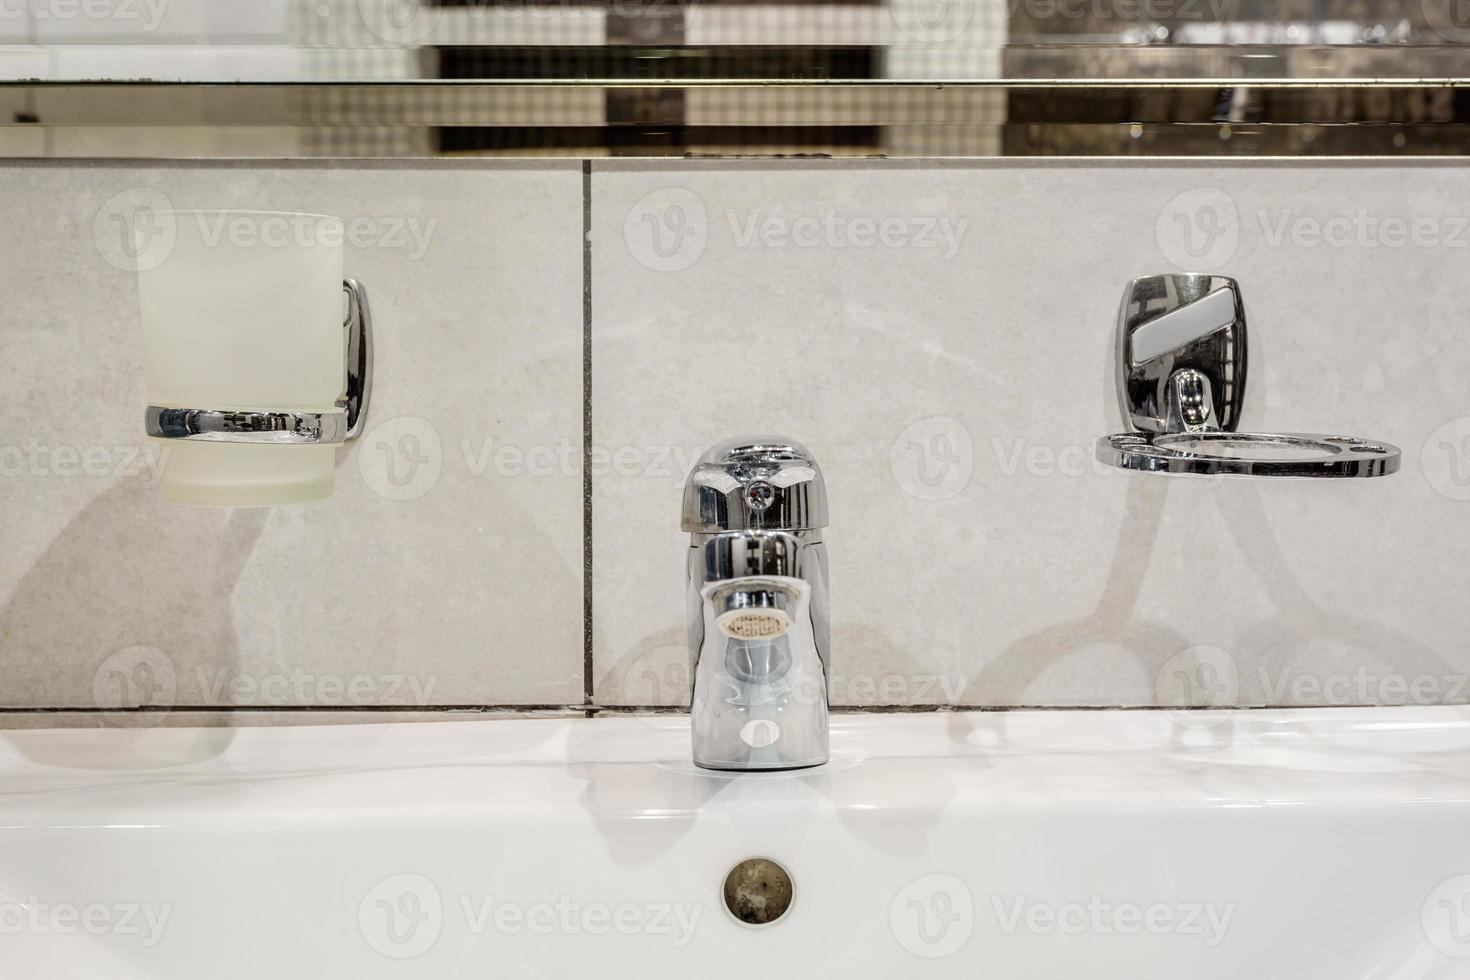 zeep- en shampoodispensers in de buurt van keramische waterkraangootsteen met kraan in dure loftbadkamer foto